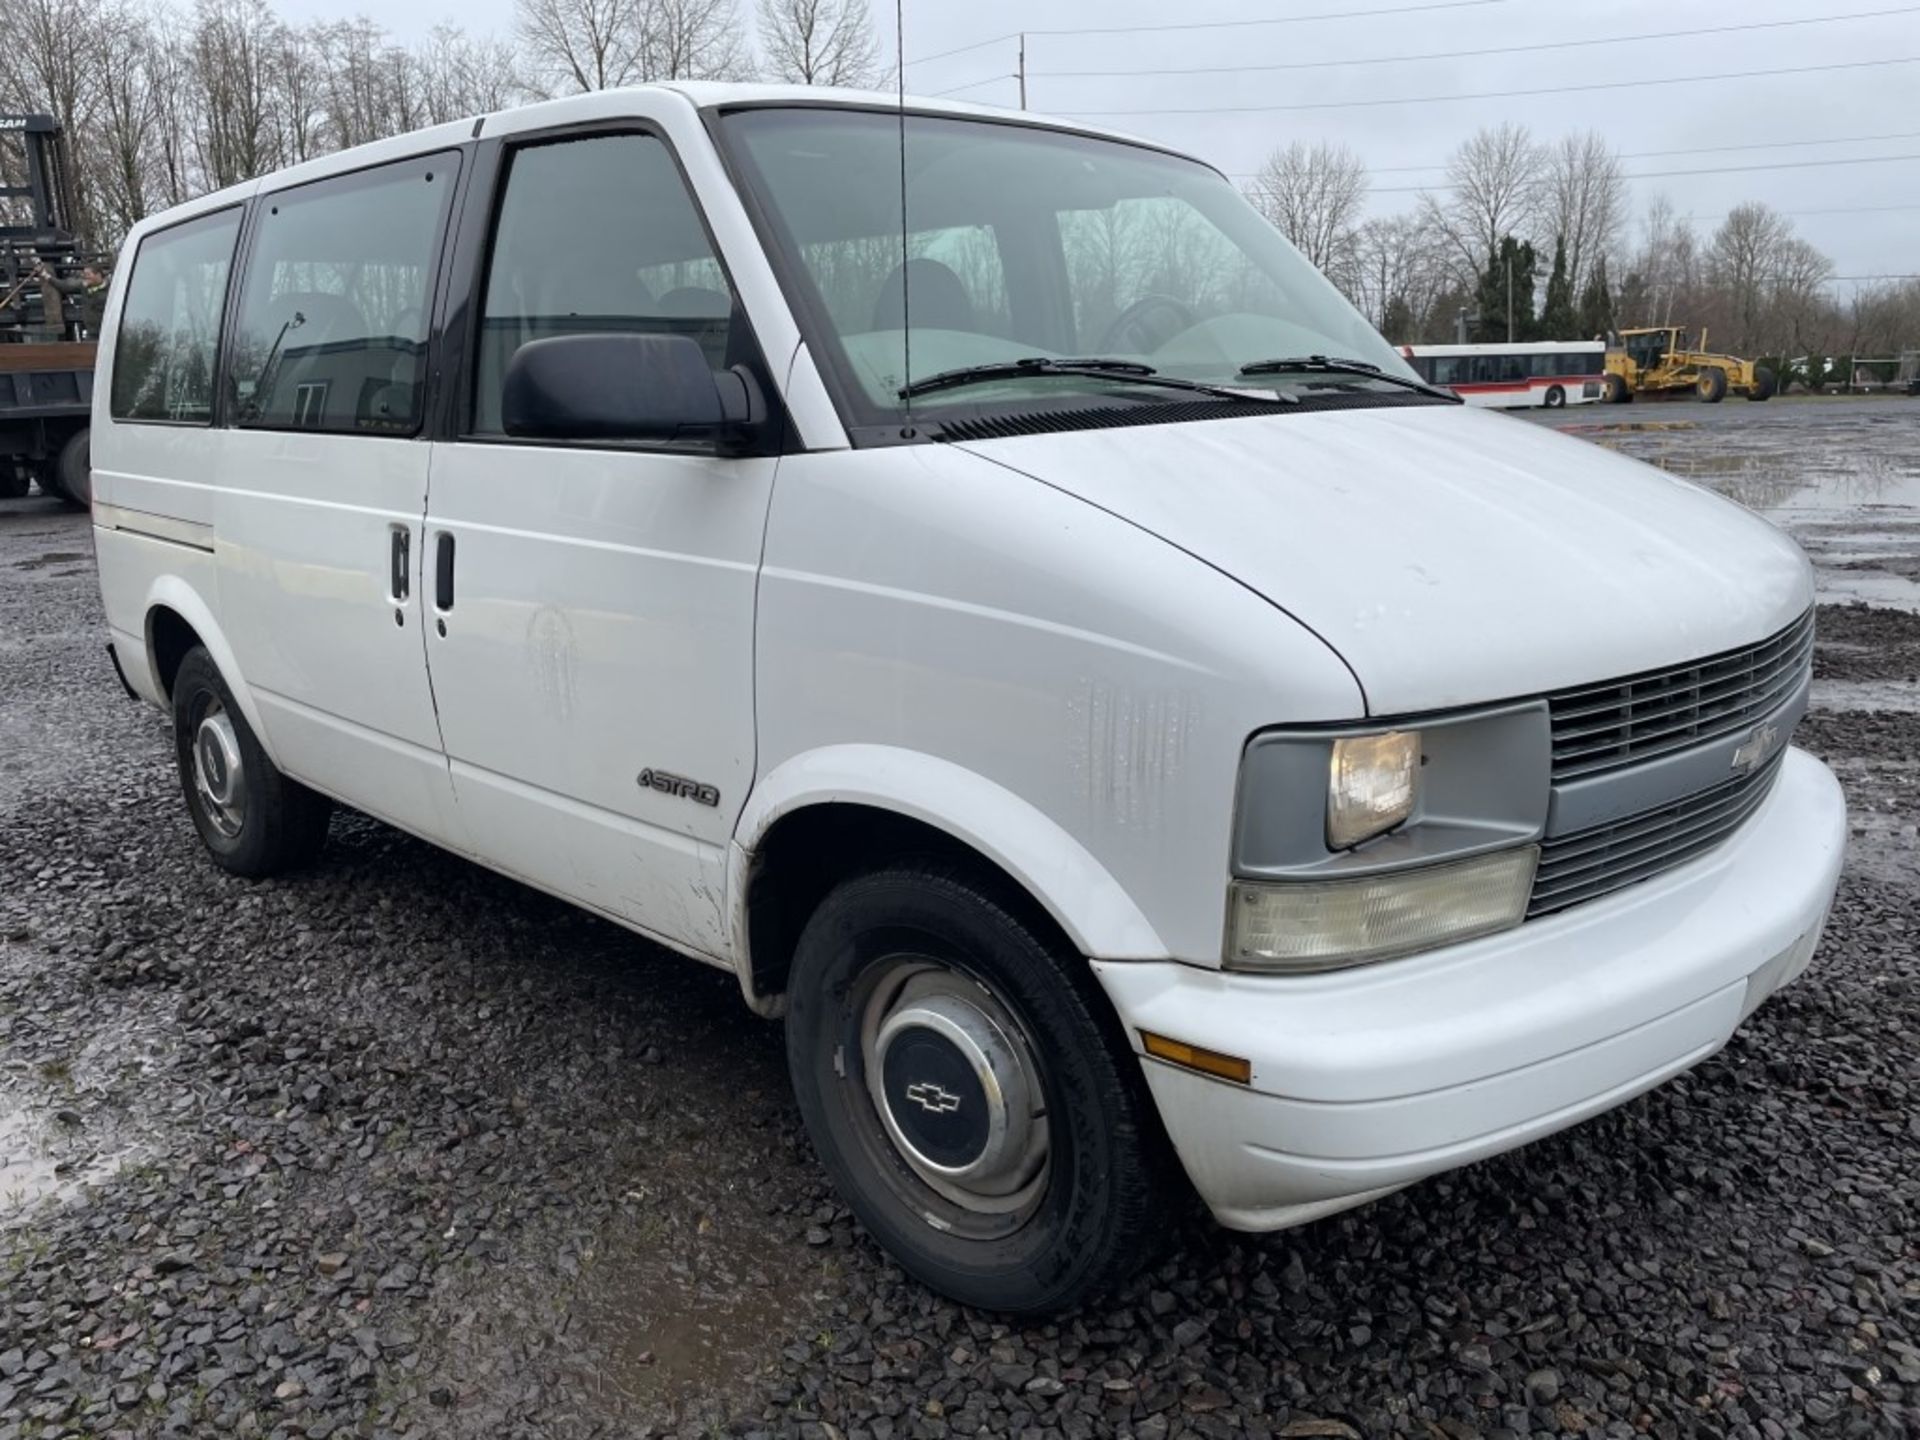 1997 Chevrolet Astro Passenger Van - Image 2 of 15